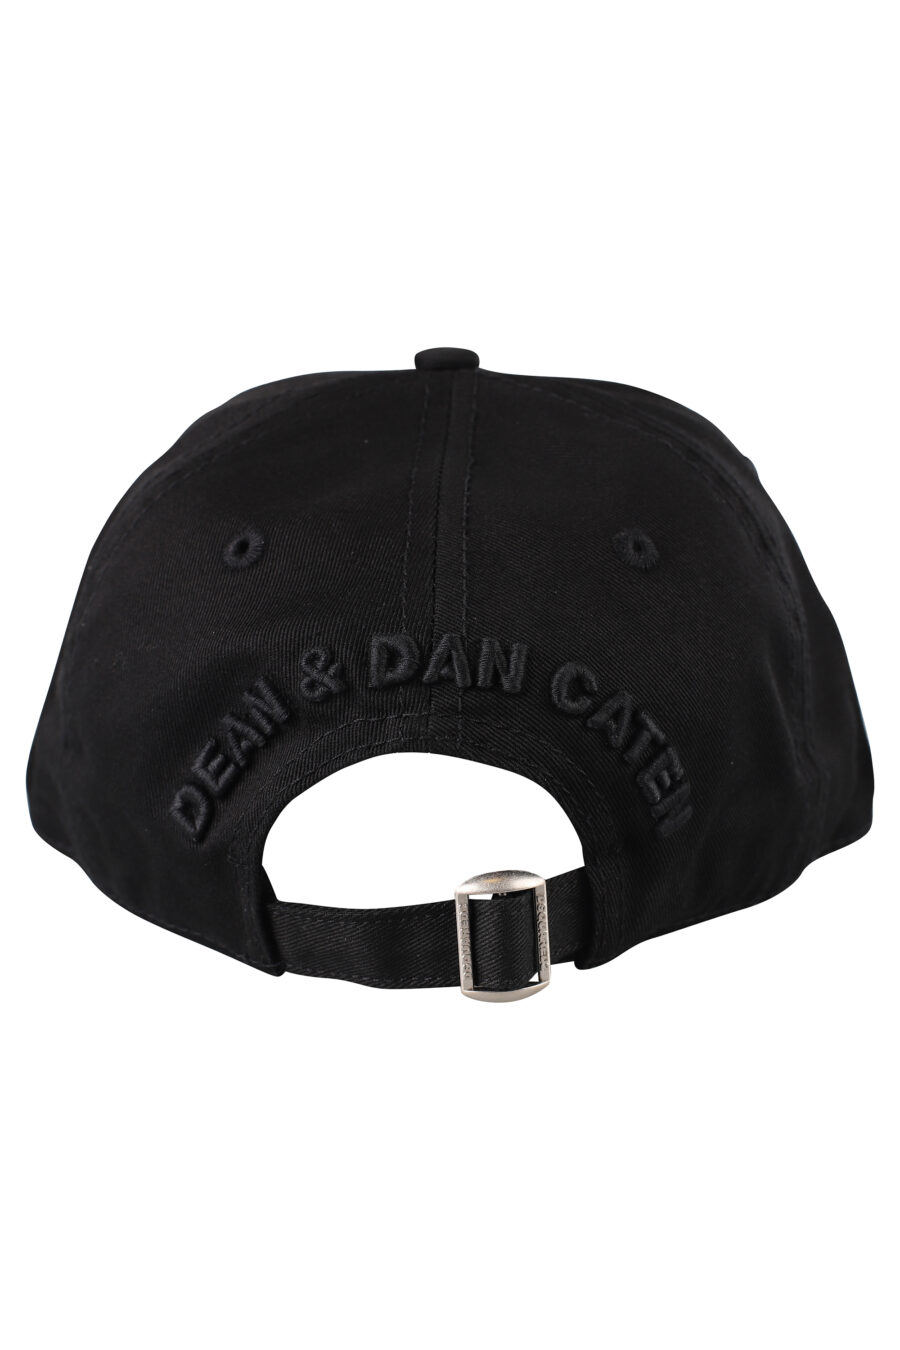 Gorra negra con logo bordado negro - IMG 1247